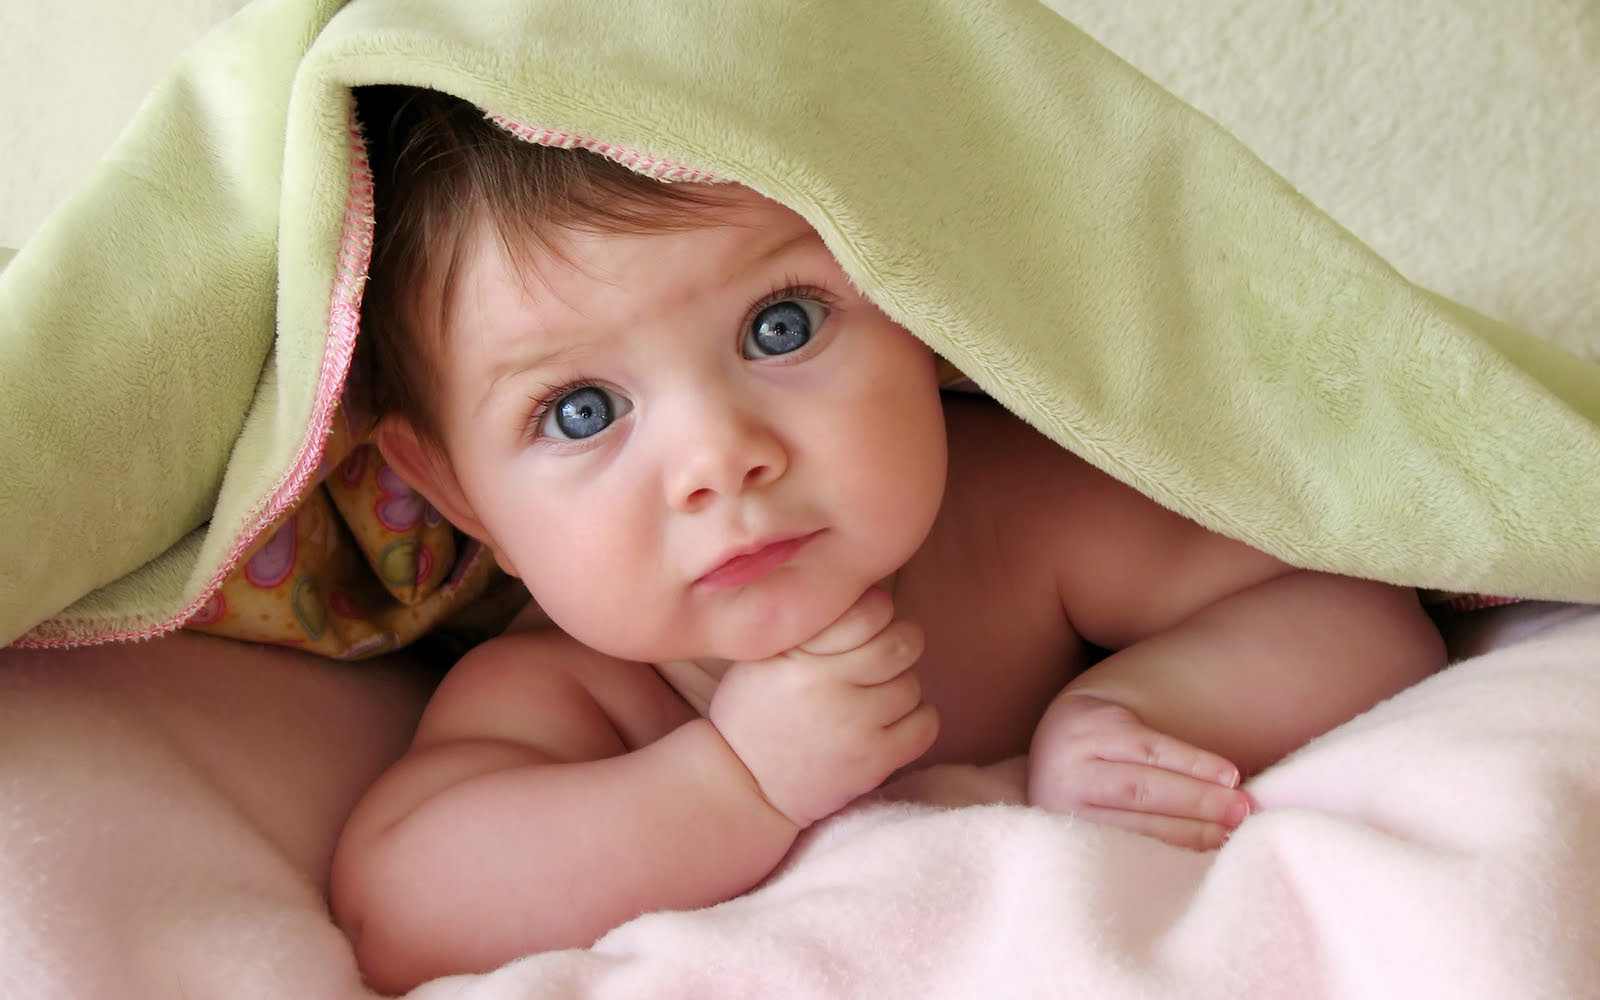 Beautiful Baby Pictures Wallpapers - WallpaperSafari